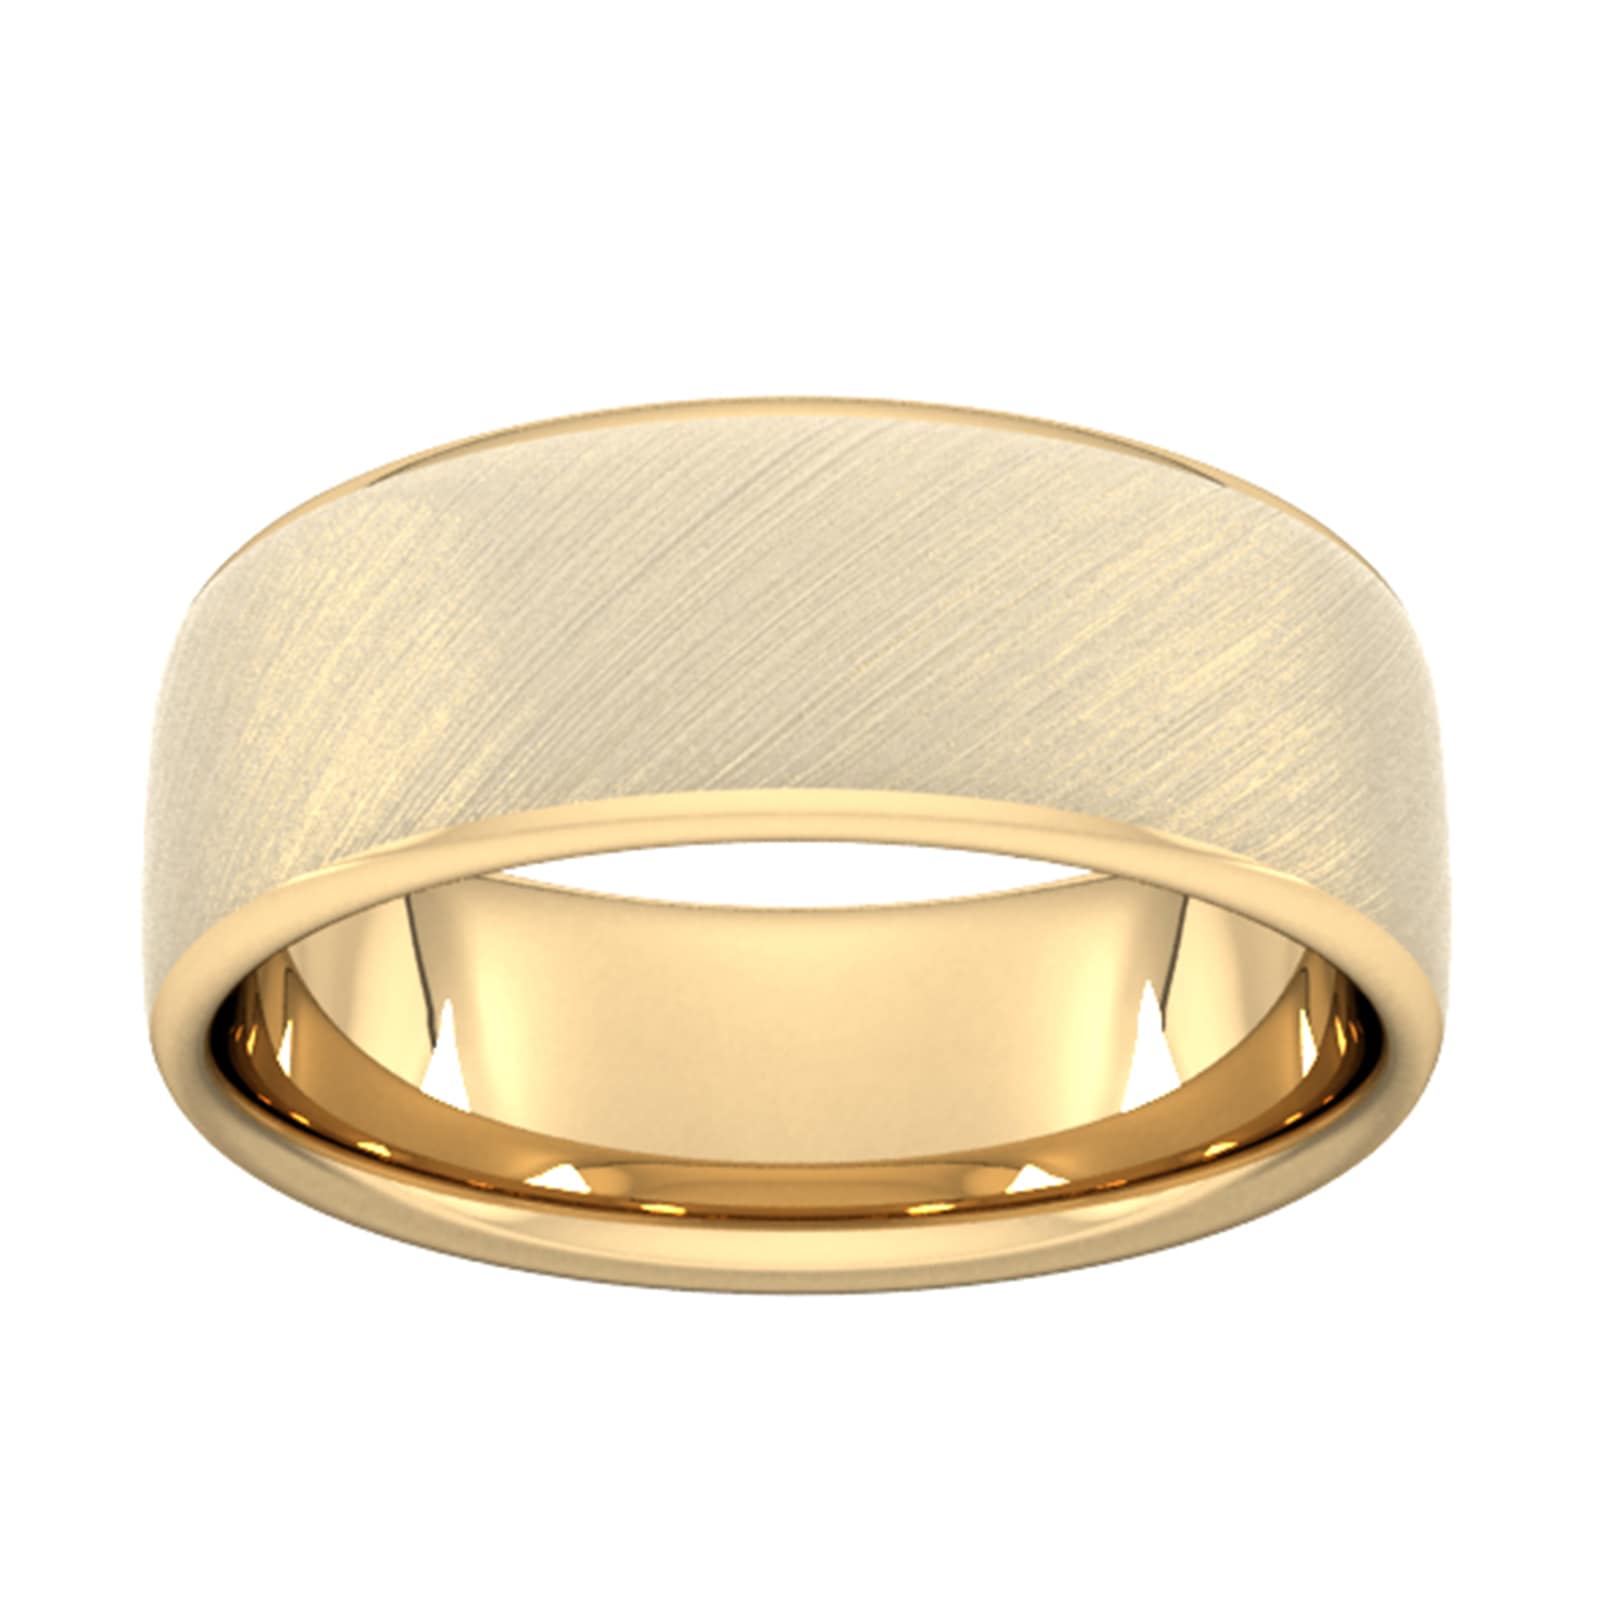 8mm Slight Court Heavy Diagonal Matt Finish Wedding Ring In 18 Carat Yellow Gold - Ring Size W